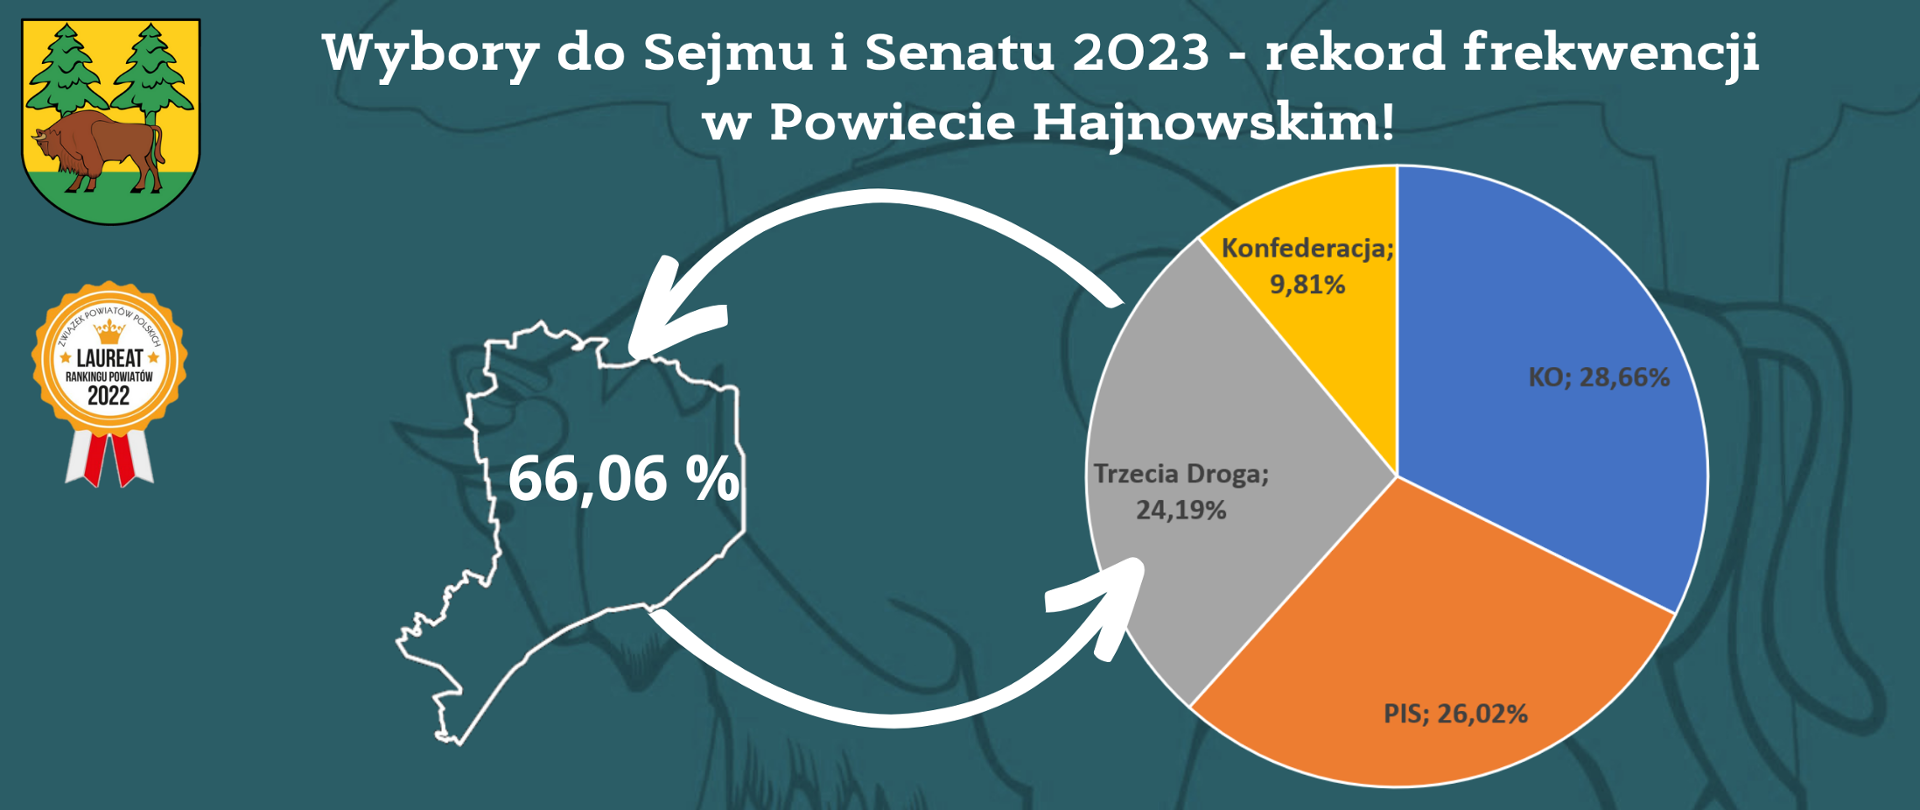 Wybory do Sejmu i Senatu 2023 - rekord frekwencji w Powiecie Hajnowskim. U dołu wykres przedstawiający procentowy rozkład głosów oraz dane o frekwencji - dane zawarte w artykule